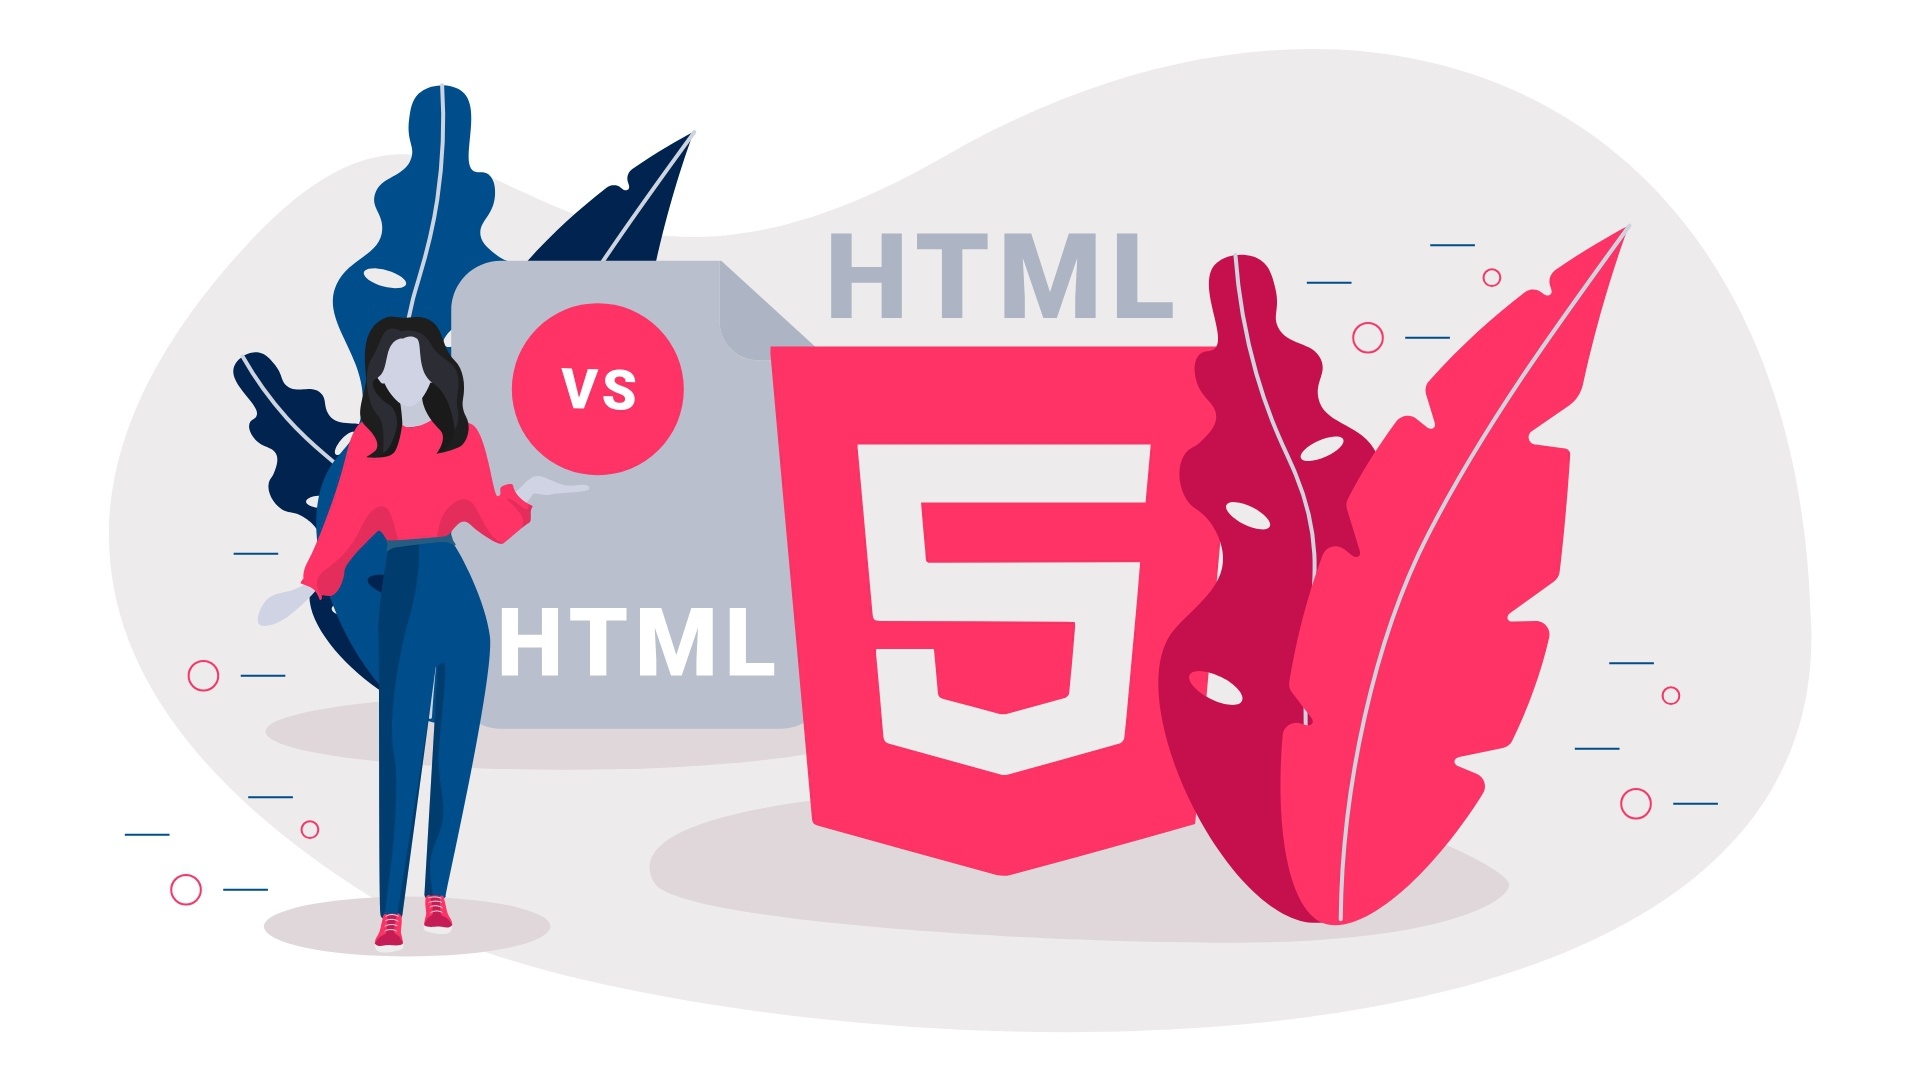 HTML5 khác HTML như thế nào? Tại sao nên dùng HTML5